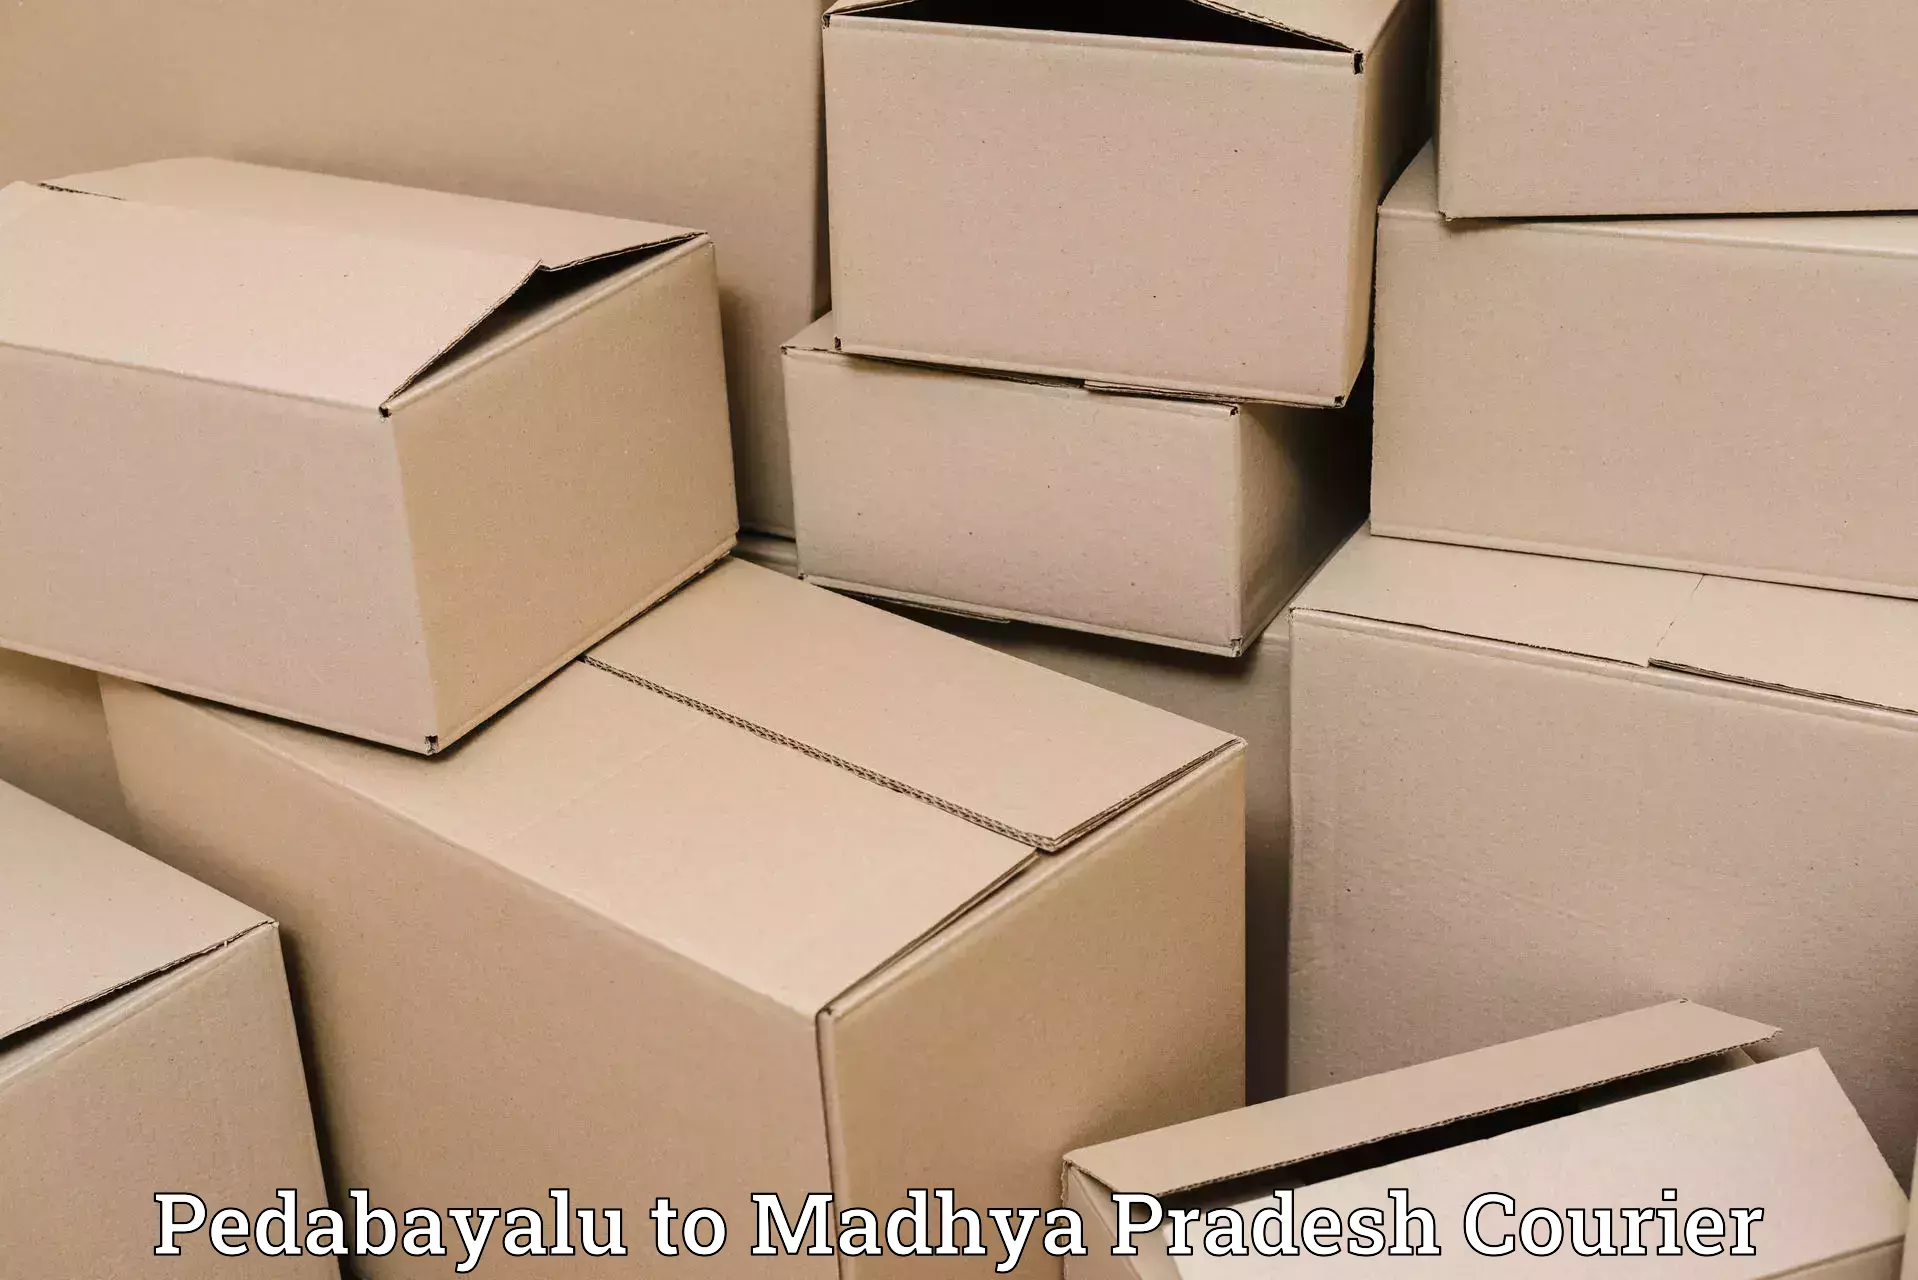 Secure shipping methods Pedabayalu to Madhya Pradesh